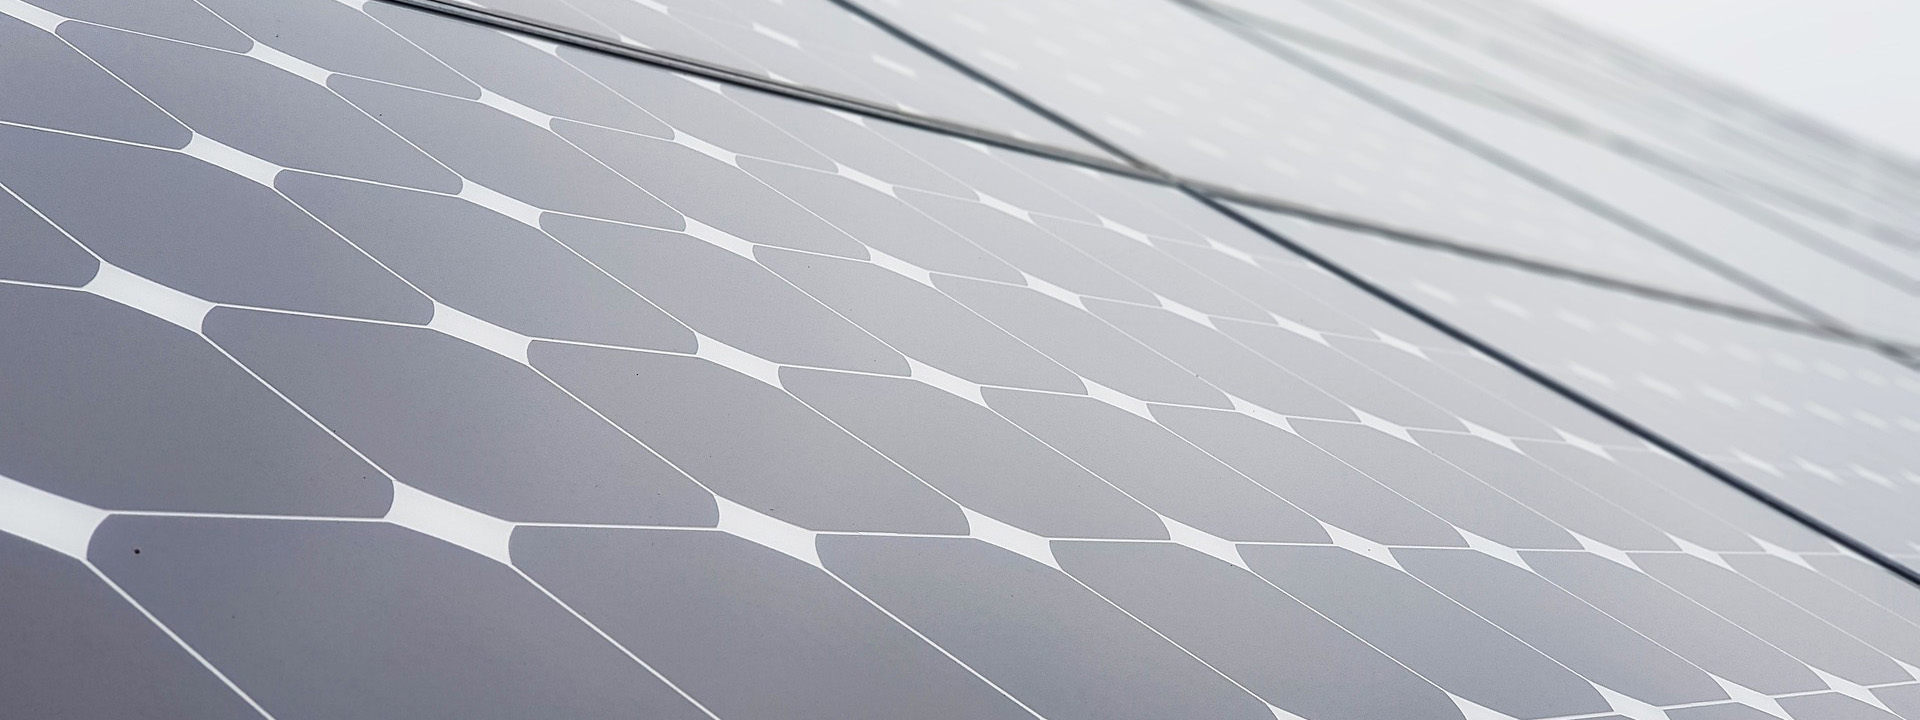 Fotovoltaico con accumulo: come funziona e vantaggi. - Gruppo GDE